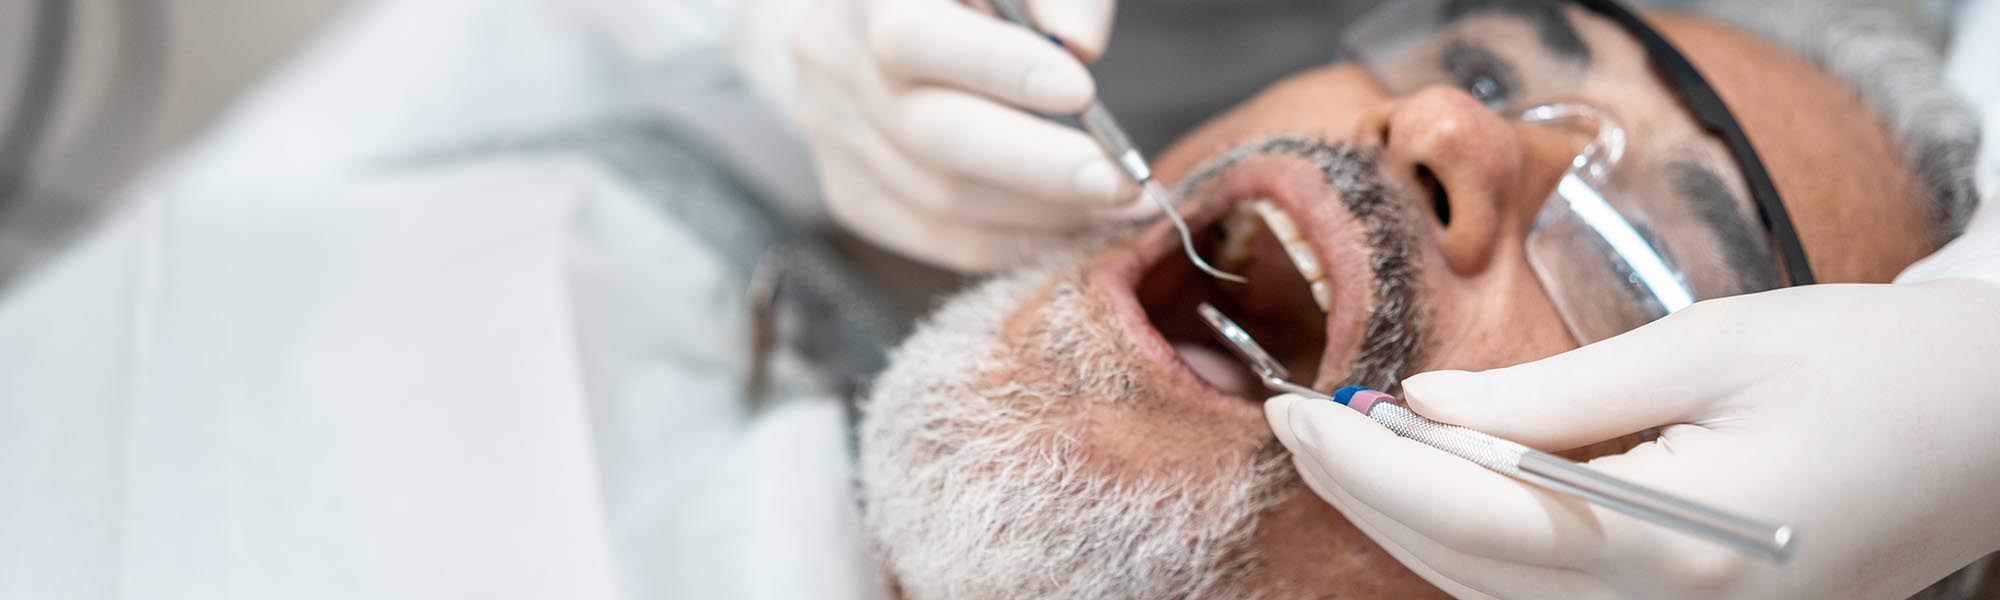 Restorative Dental Treatments El Segundo CA